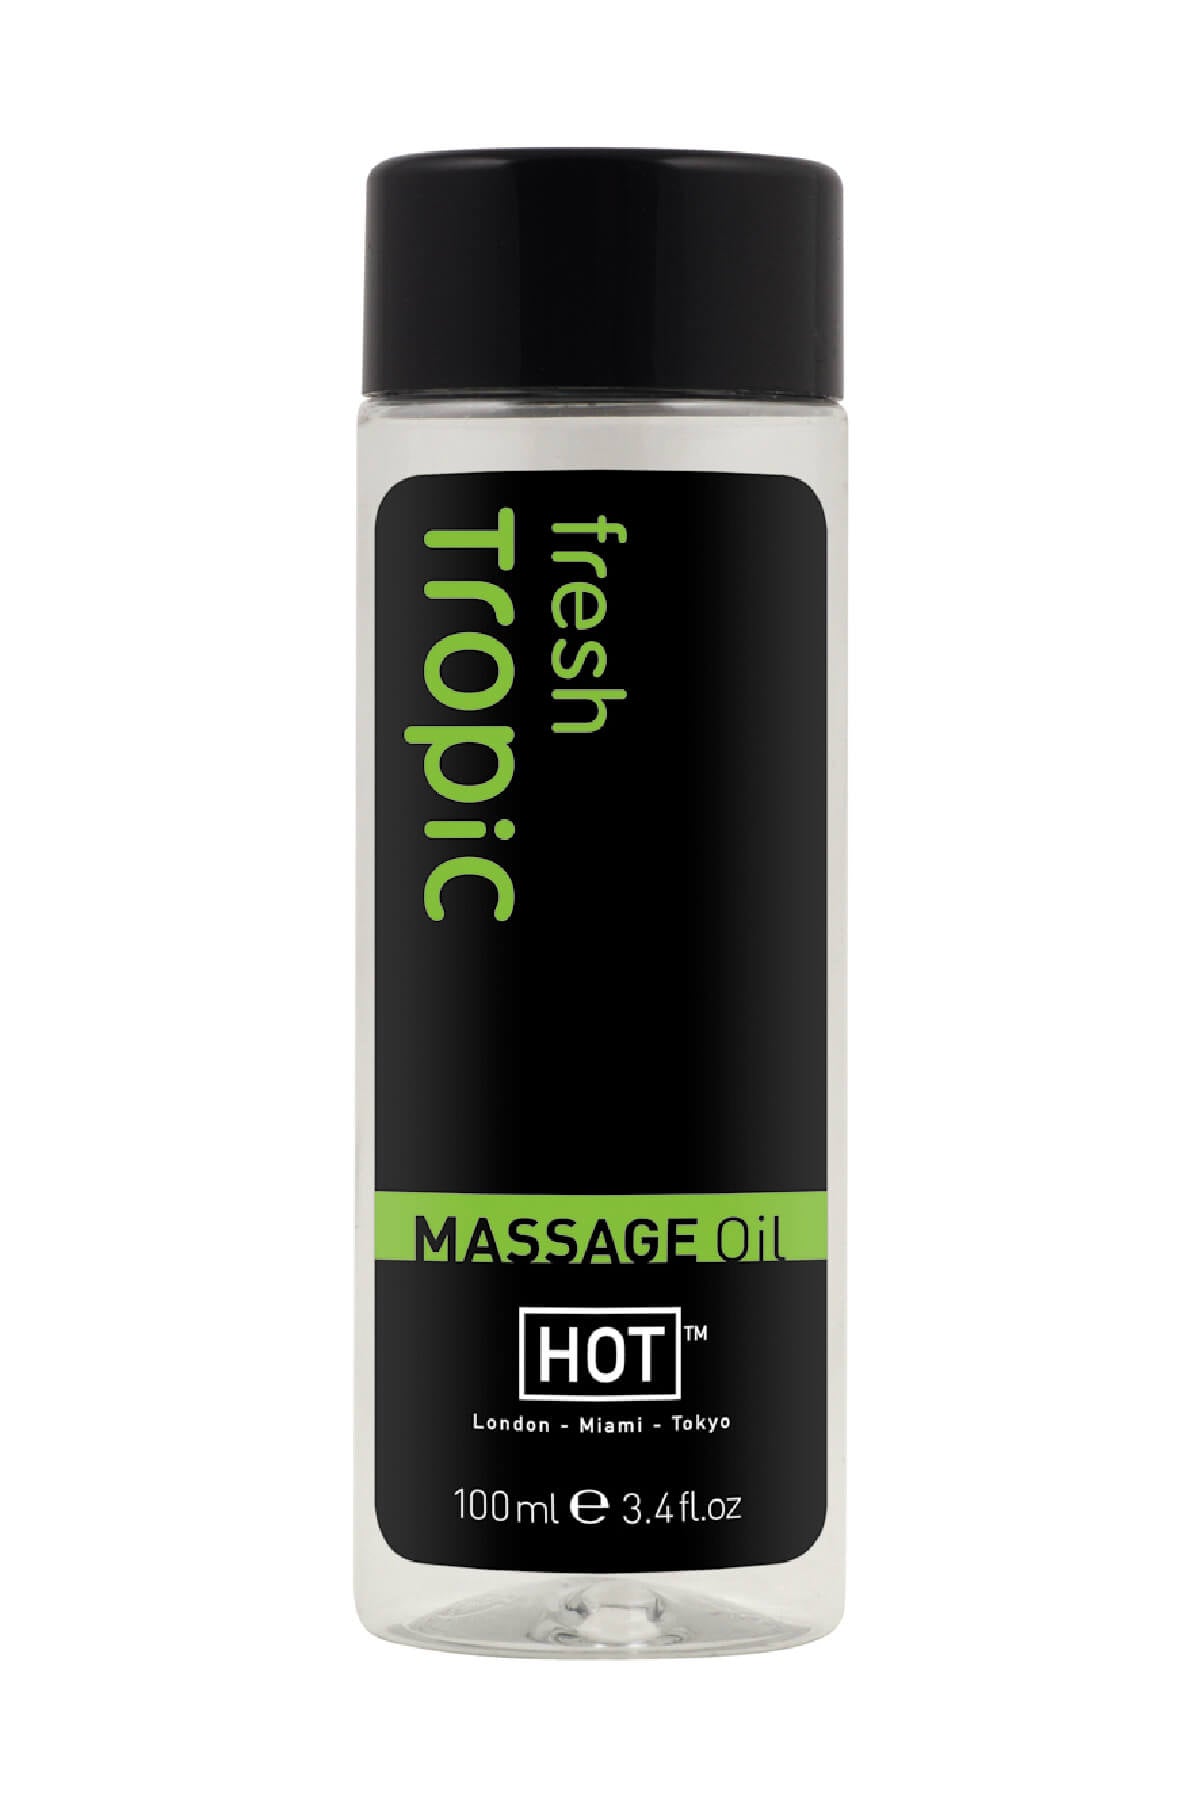 HOT Massageöl - Tropic 100ml